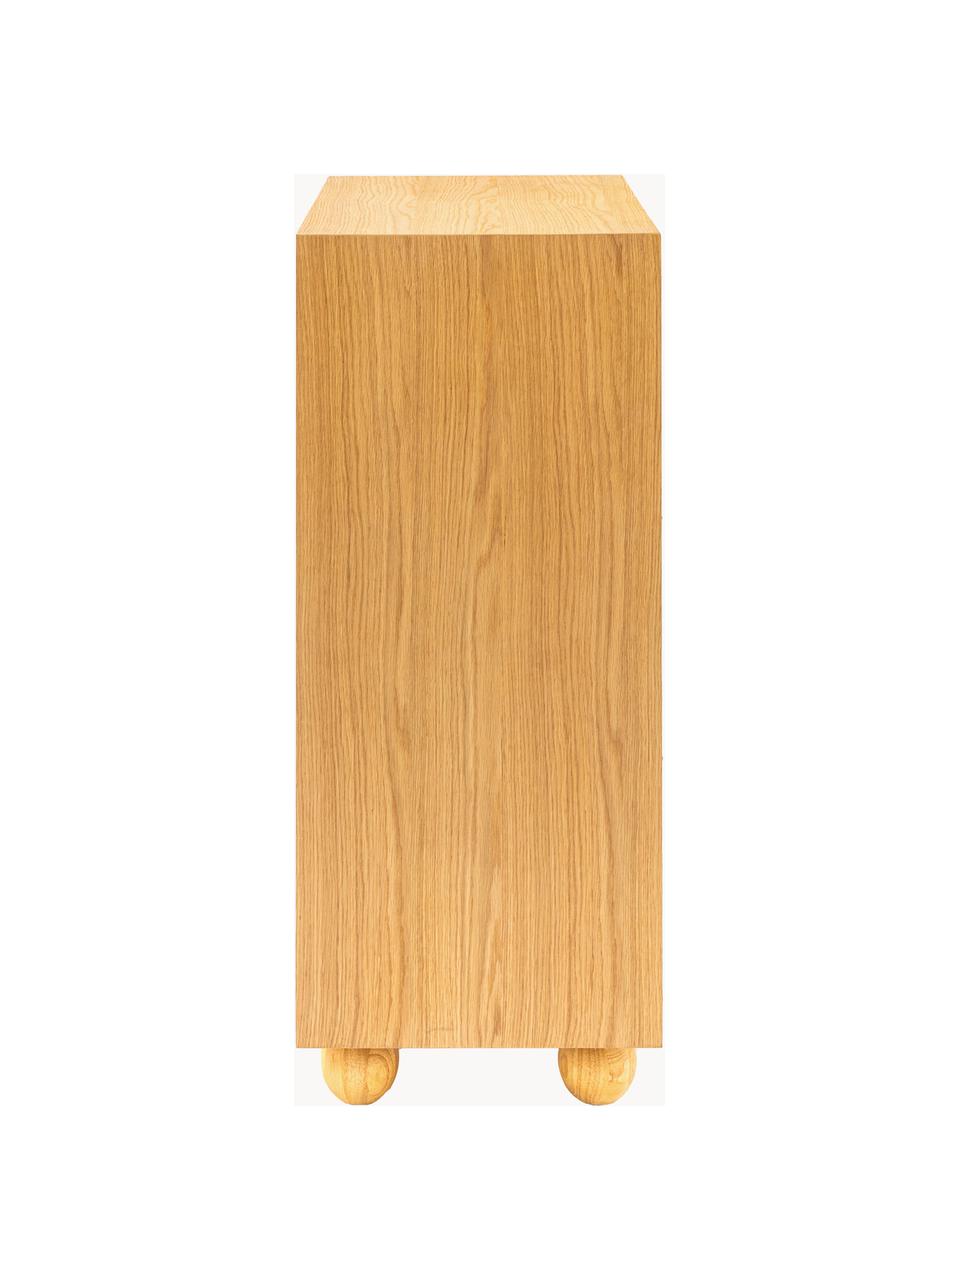 Holz-Highboard Geo, Beine: Eichenholz, Holz, B 85 x H 110 cm